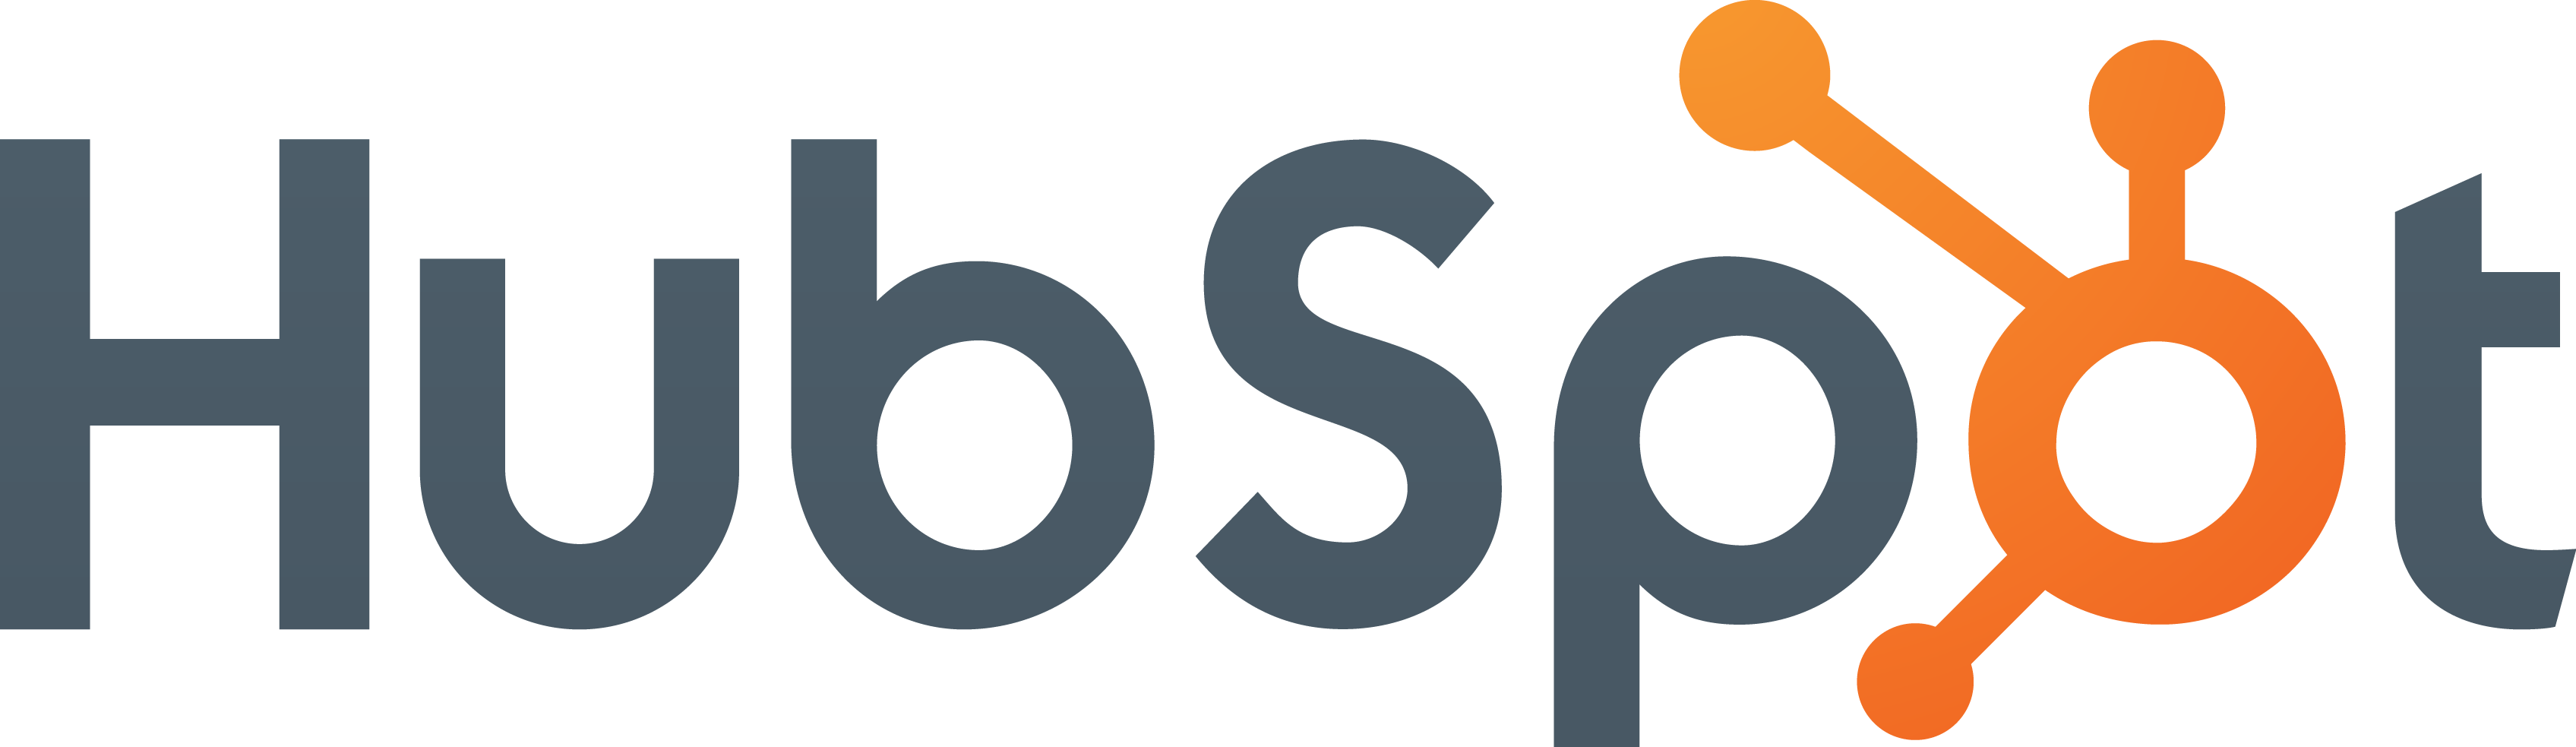 HubSpot Logo Color Transparent